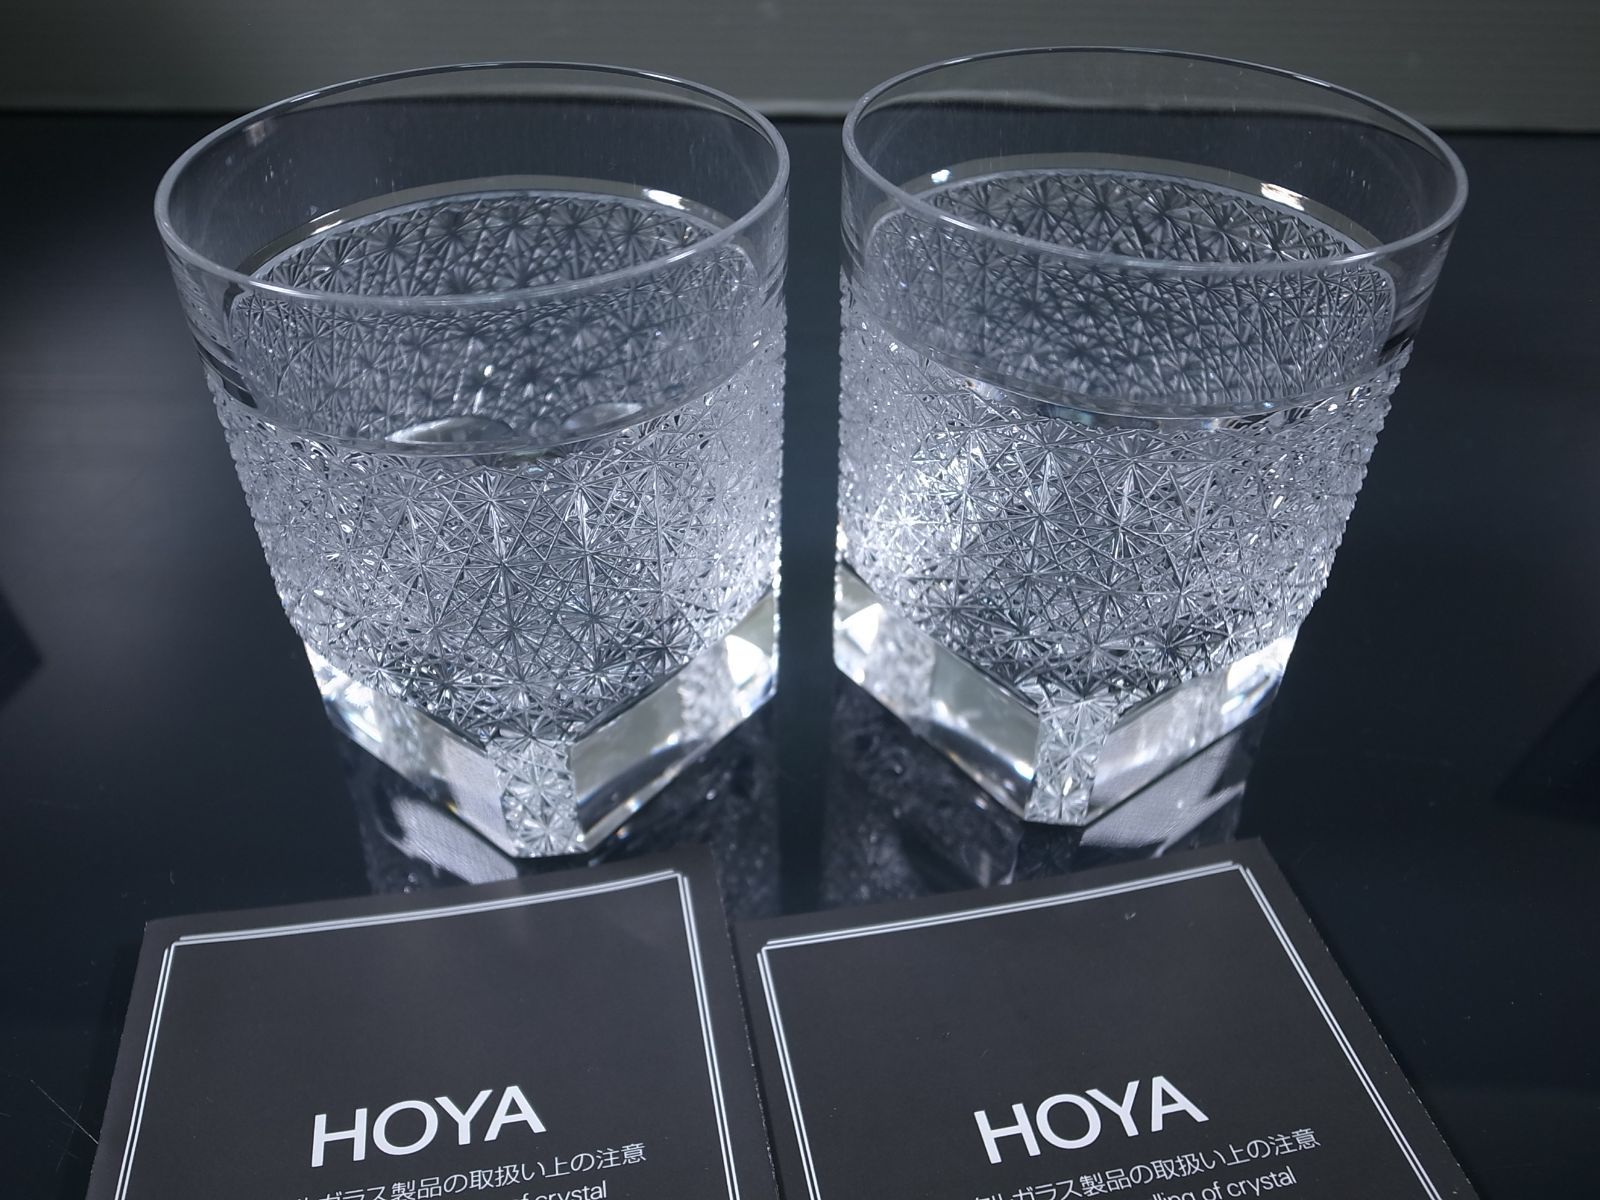 100%新品豊富なHOYA ホヤ クリスタル タンブラーコレクション オールドファッション ロックグラス 2個セット クリスタルガラス